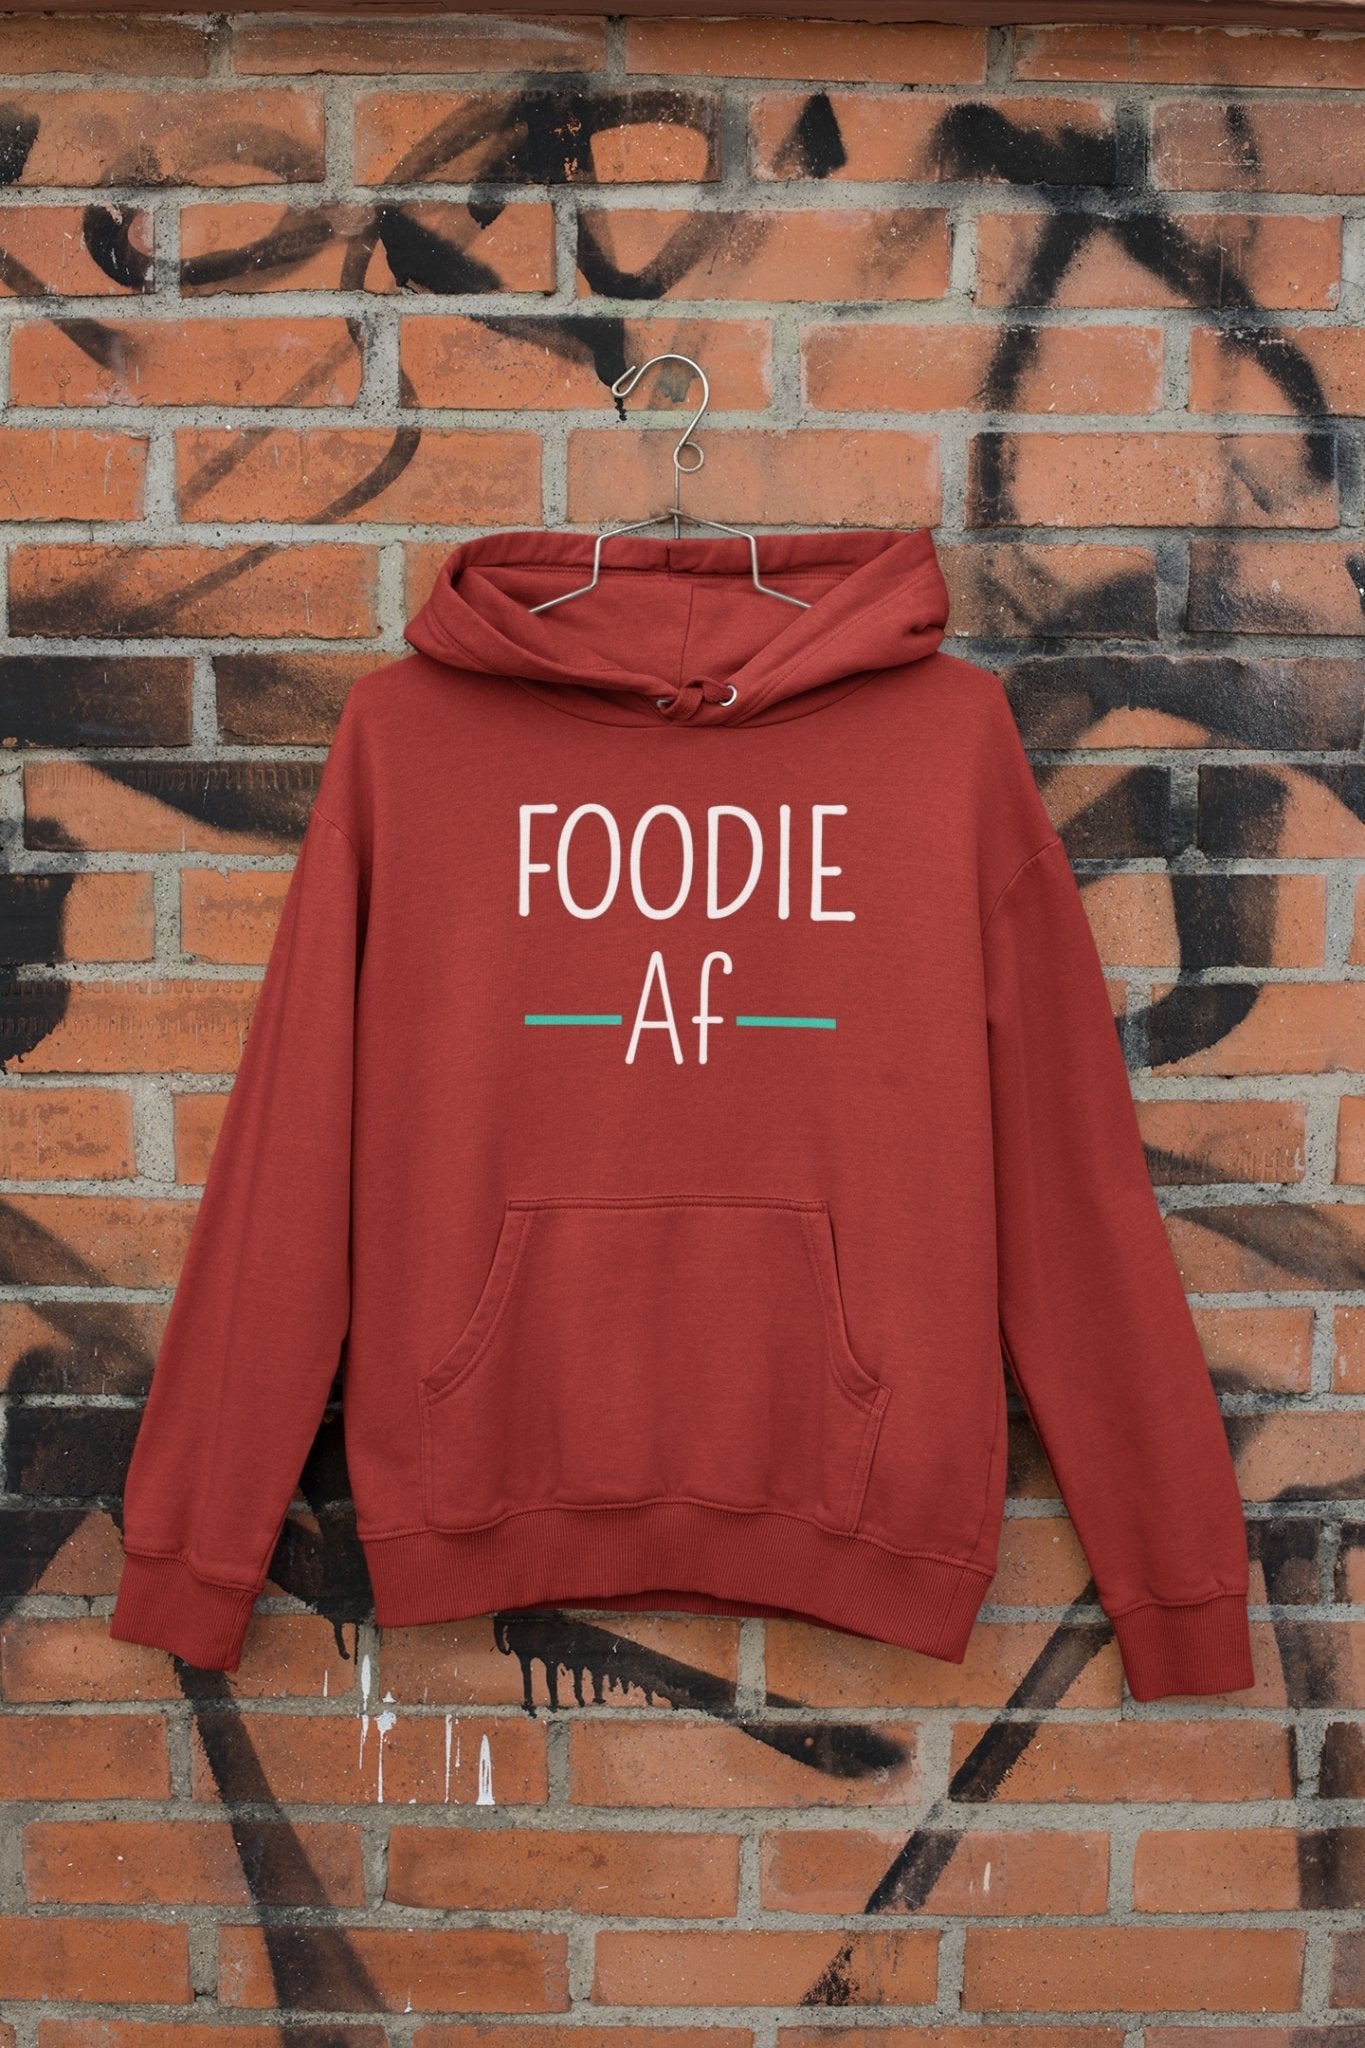 Foodie Af Men Hoodies-FunkyTeesClub - Funky Tees Club